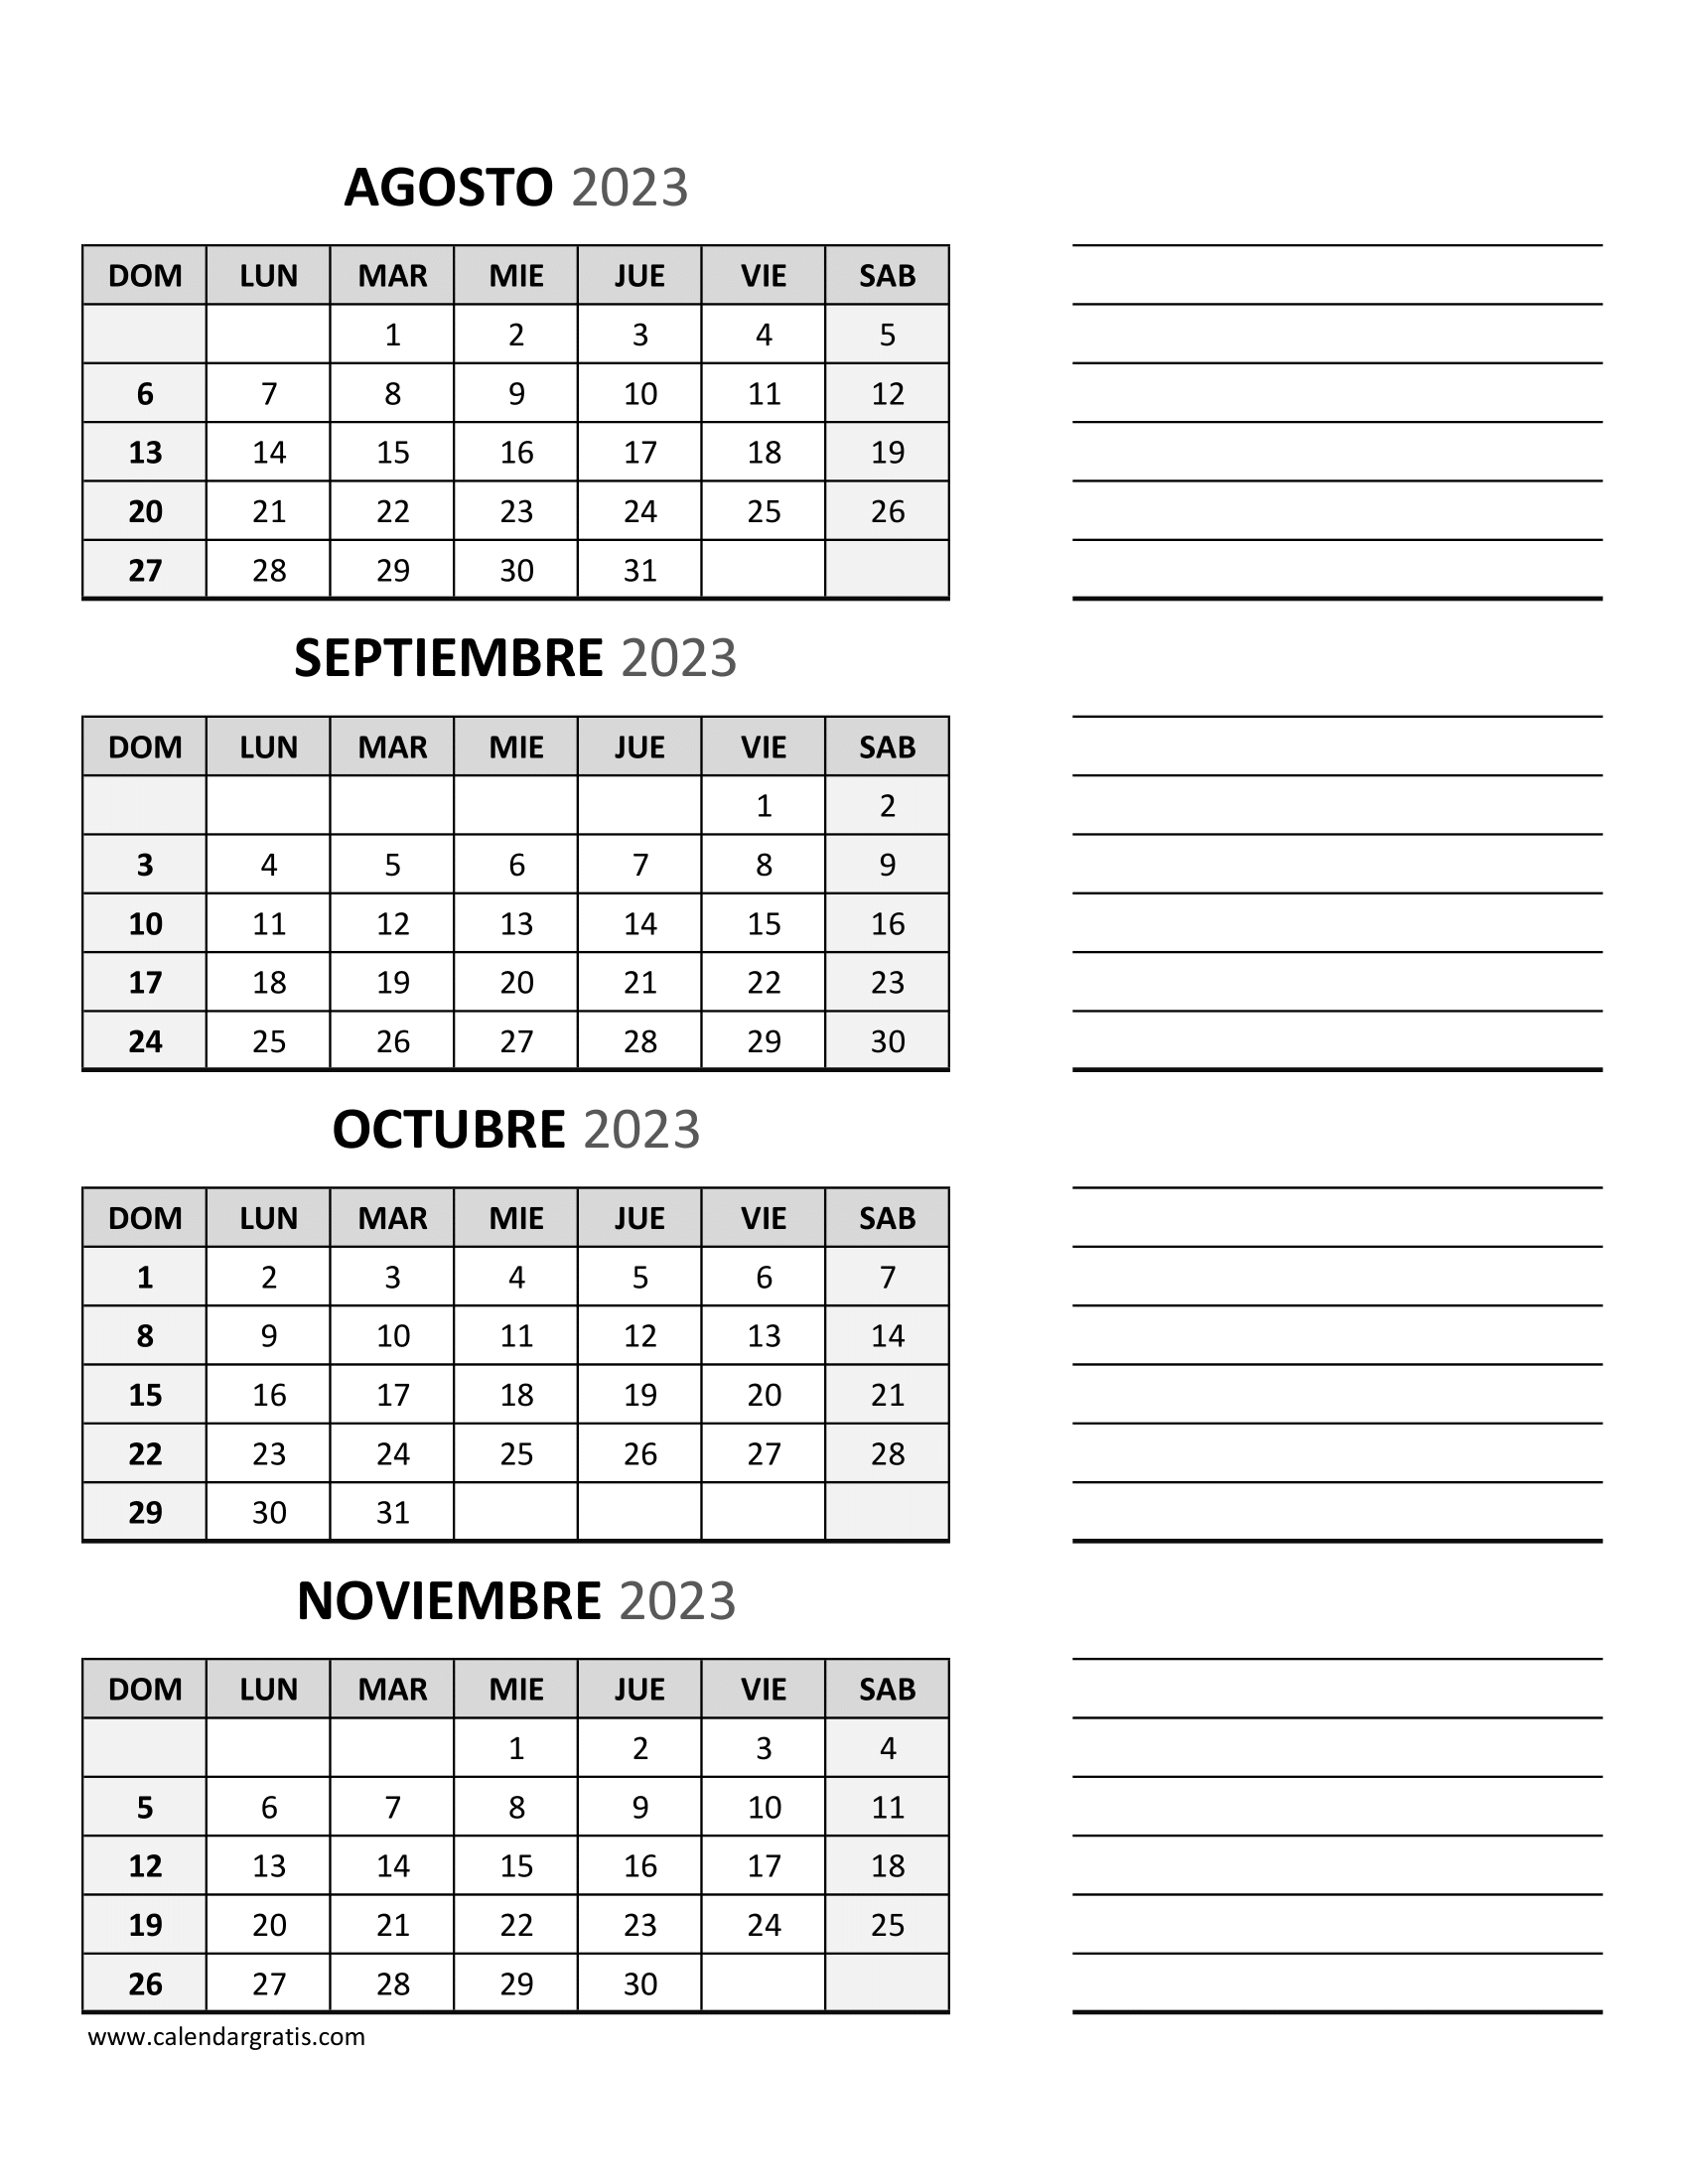 Calendario Agosto, Septiembre, Octubre, Noviembre 2023 con Notas